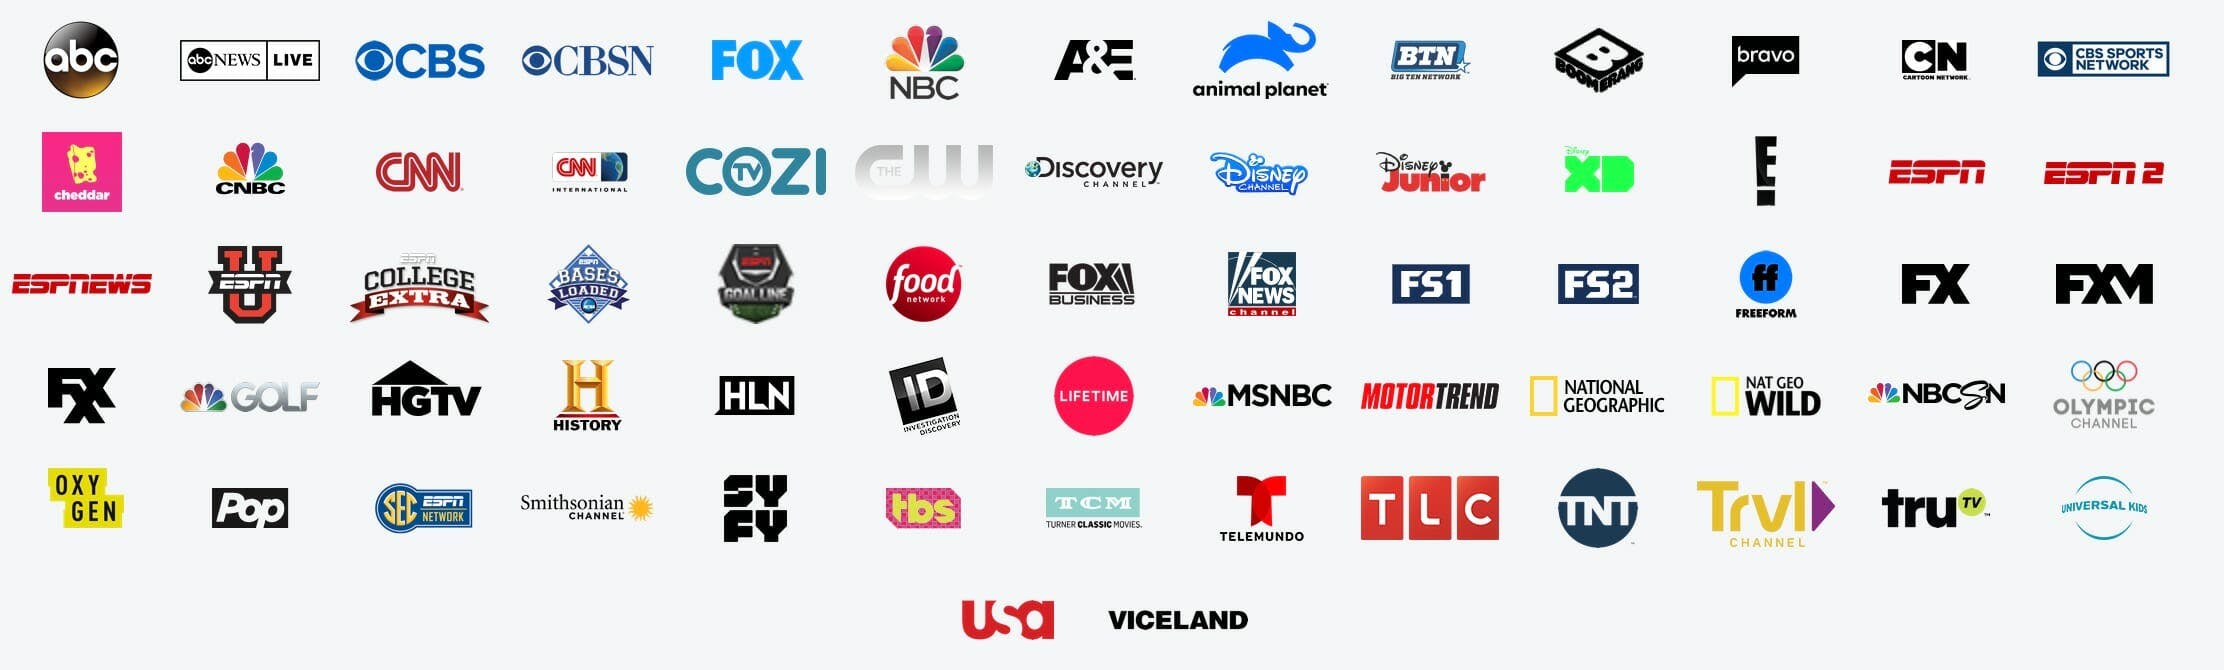 Hulu con TV en vivo canales